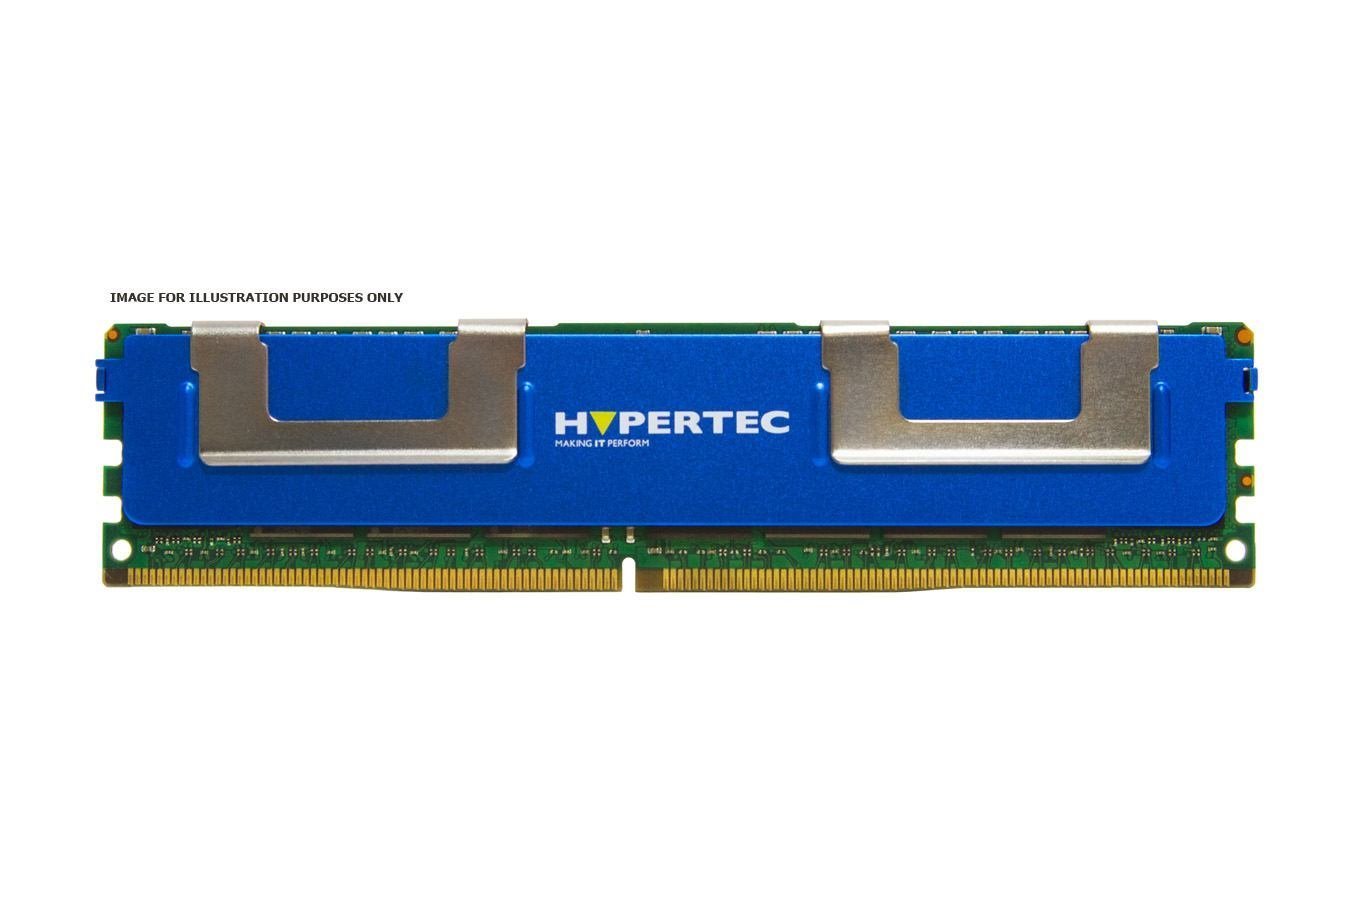 Hypertec 536890-001-HY Memory Module 8 GB 1 X 8 GB DDR3 1333 MHz Ecc (A HP Equivalent 8 GB Dual Rank - Registered Ecc DDR3 Sdram - Dimm 240-Pin 1333 MHz [ PC3-10600 ]Legacy [1Year Warranty])